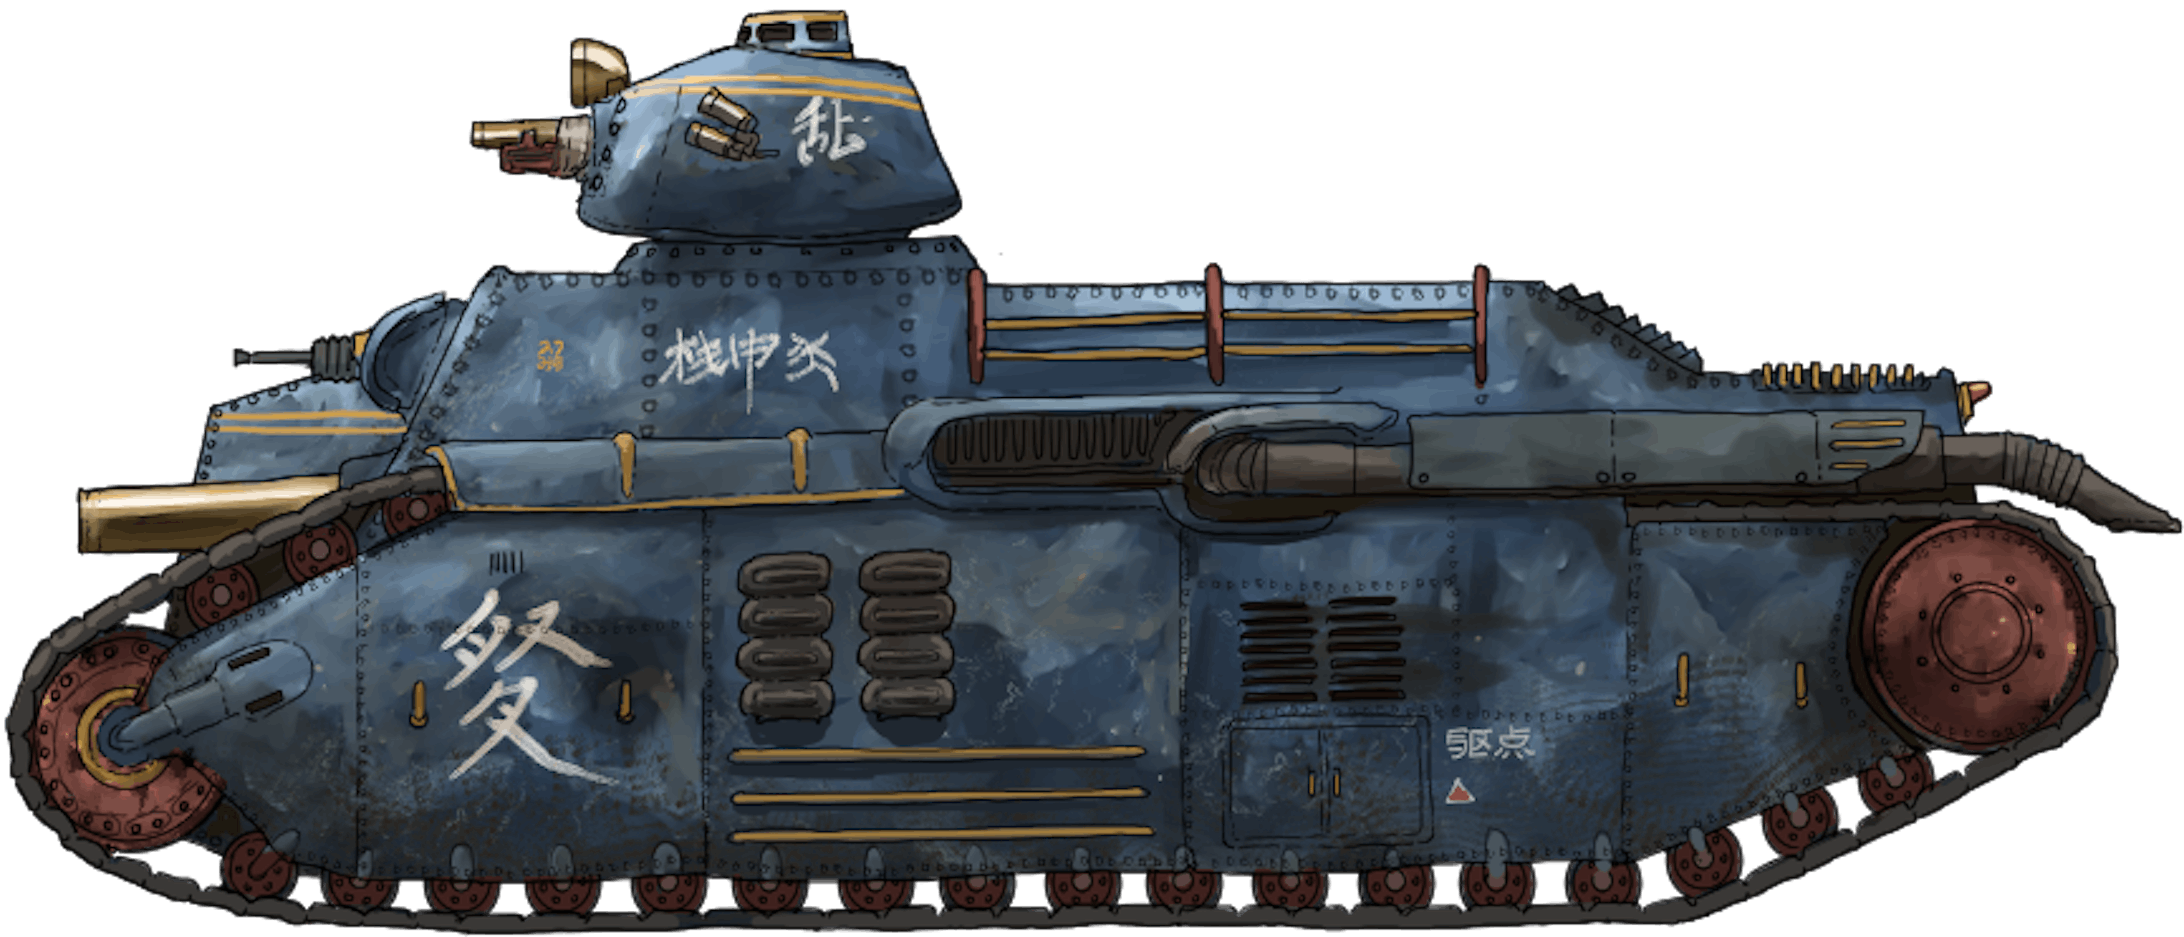 乗り物デザイン 戦車